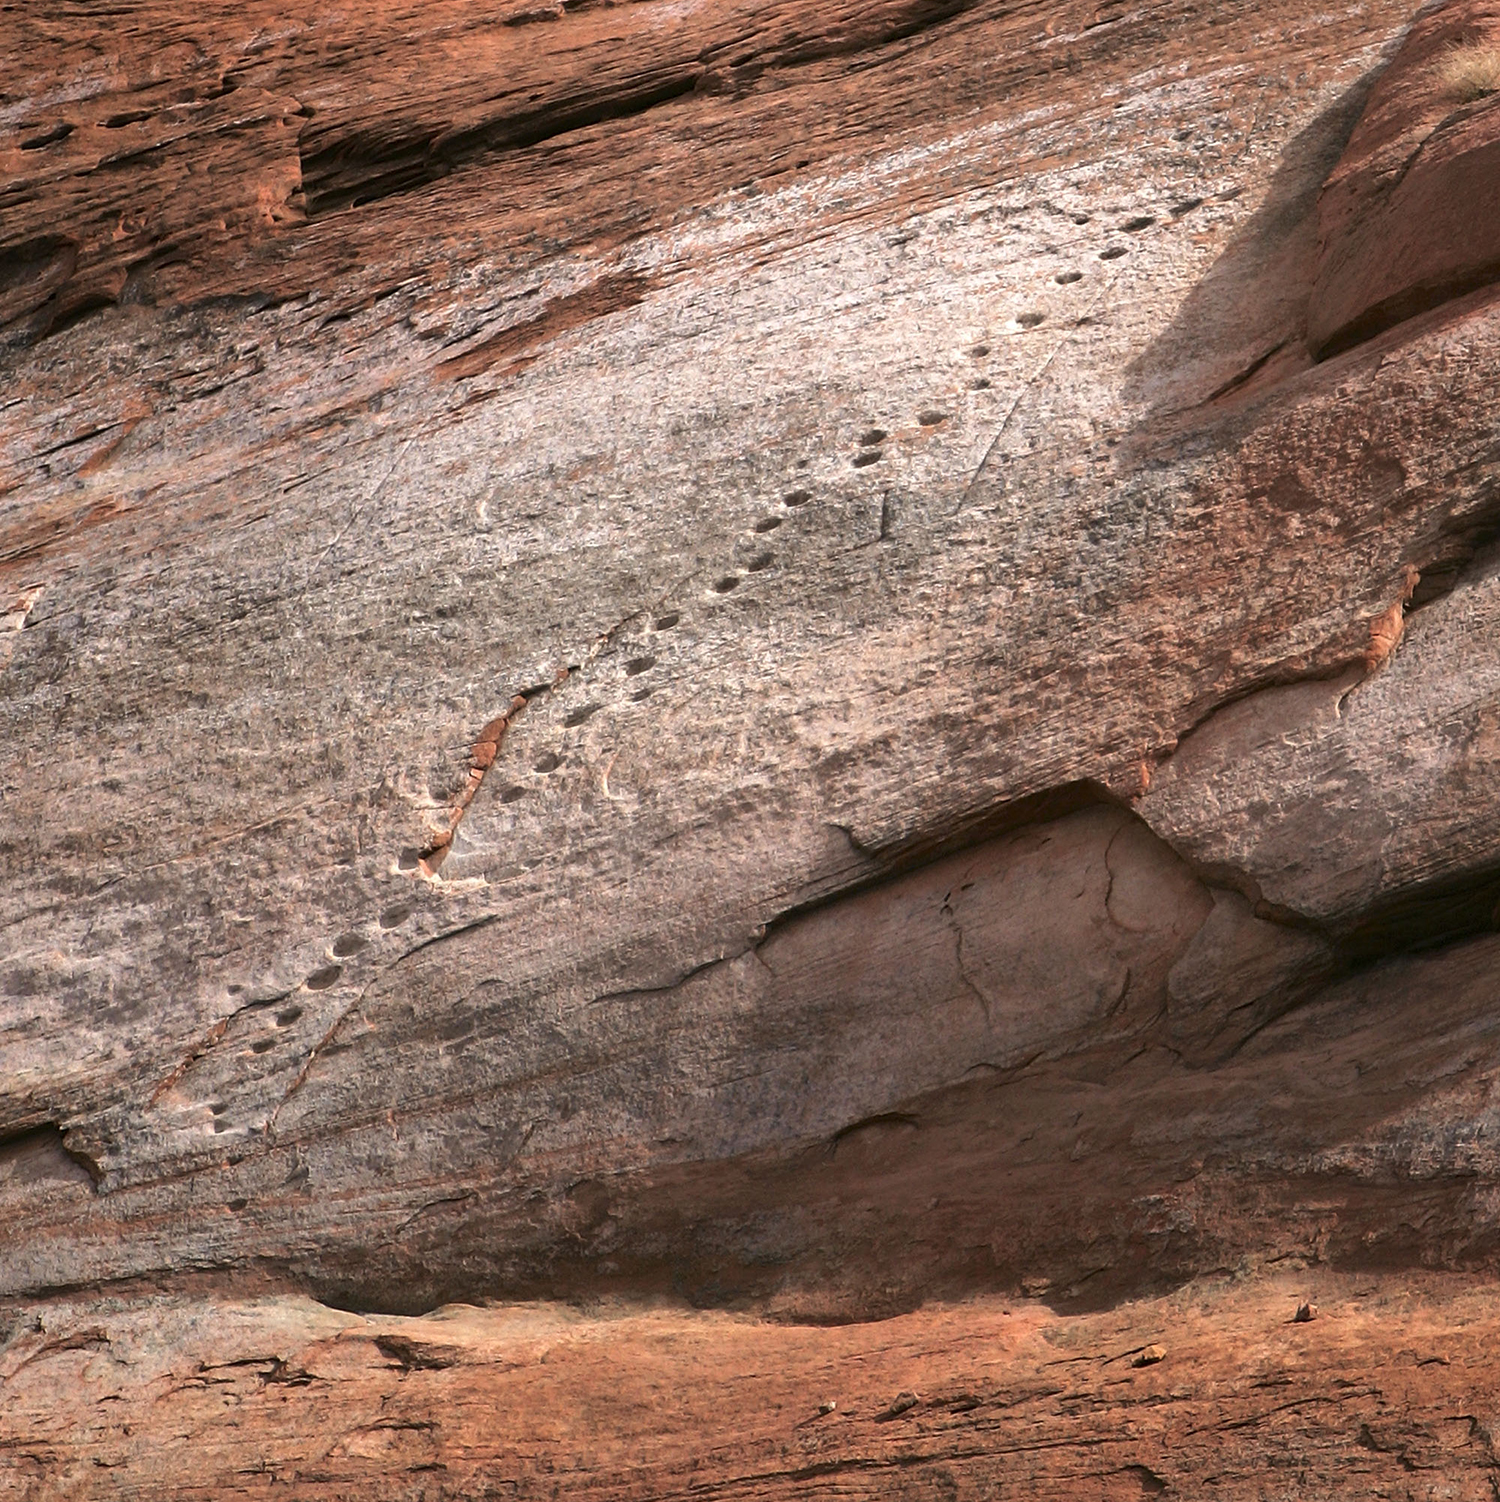 ladder carved into desert rock